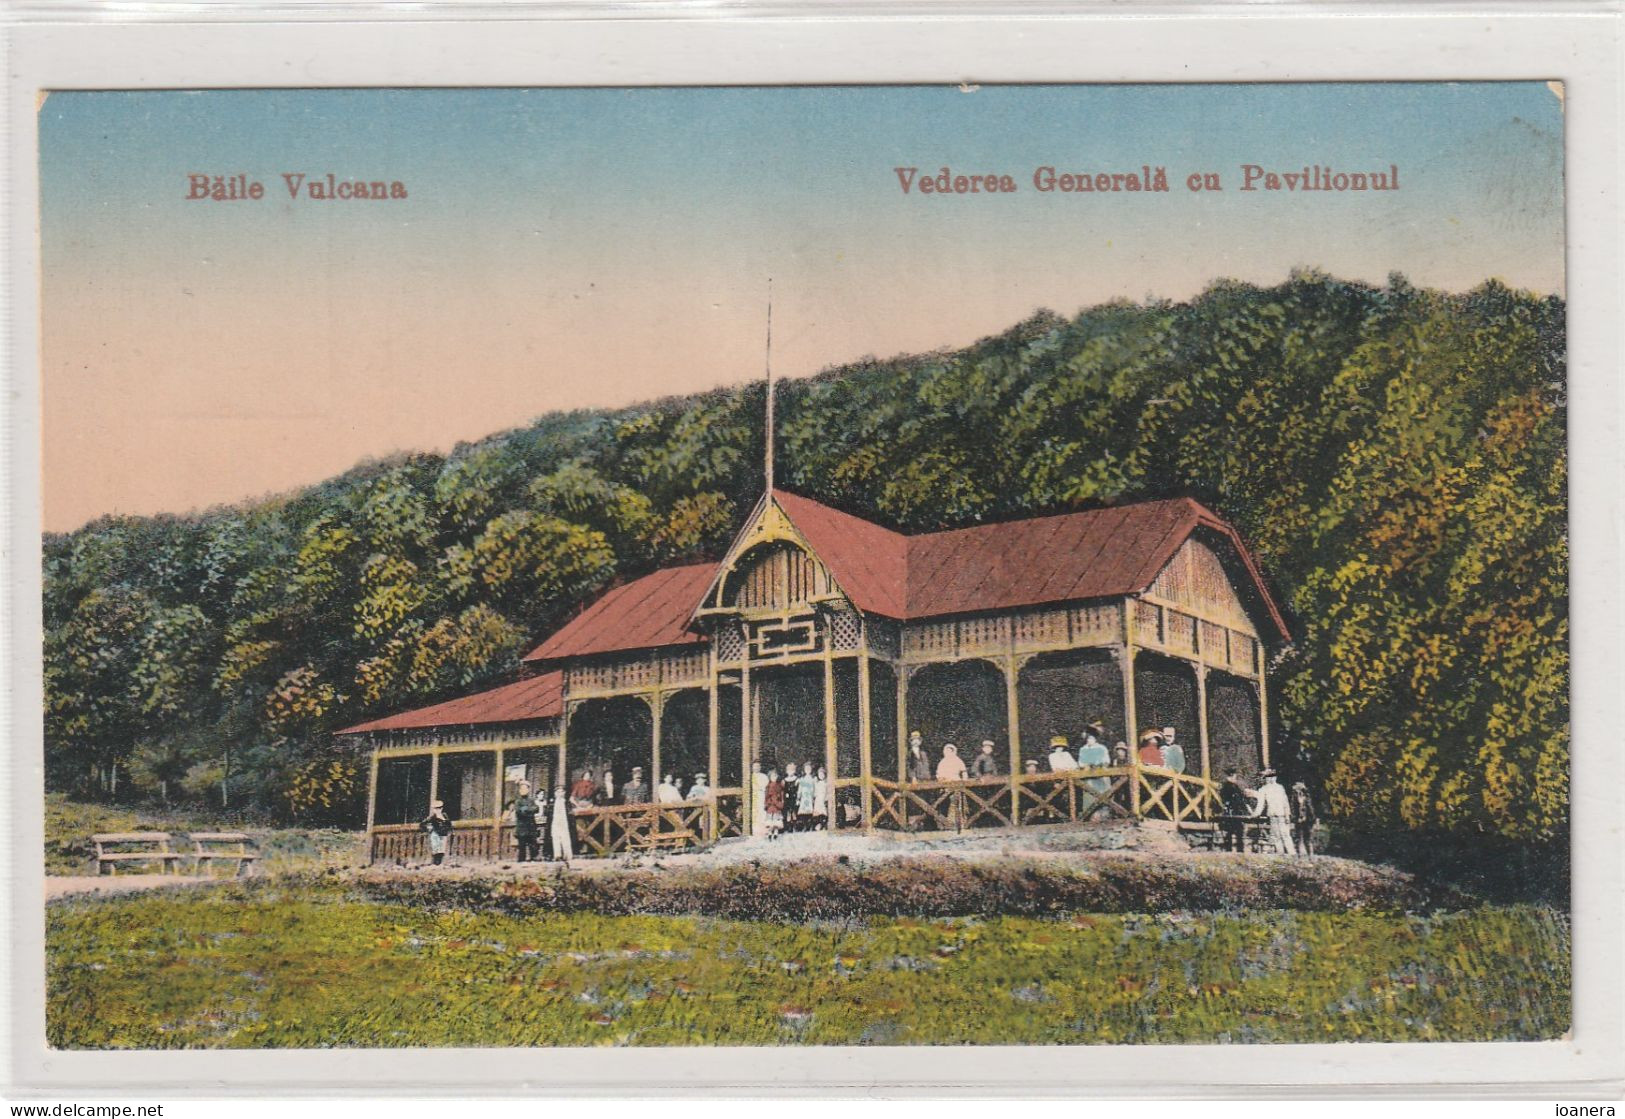 Baile Vulcana-Vedere Generala Cu Pavilionul - Roumanie